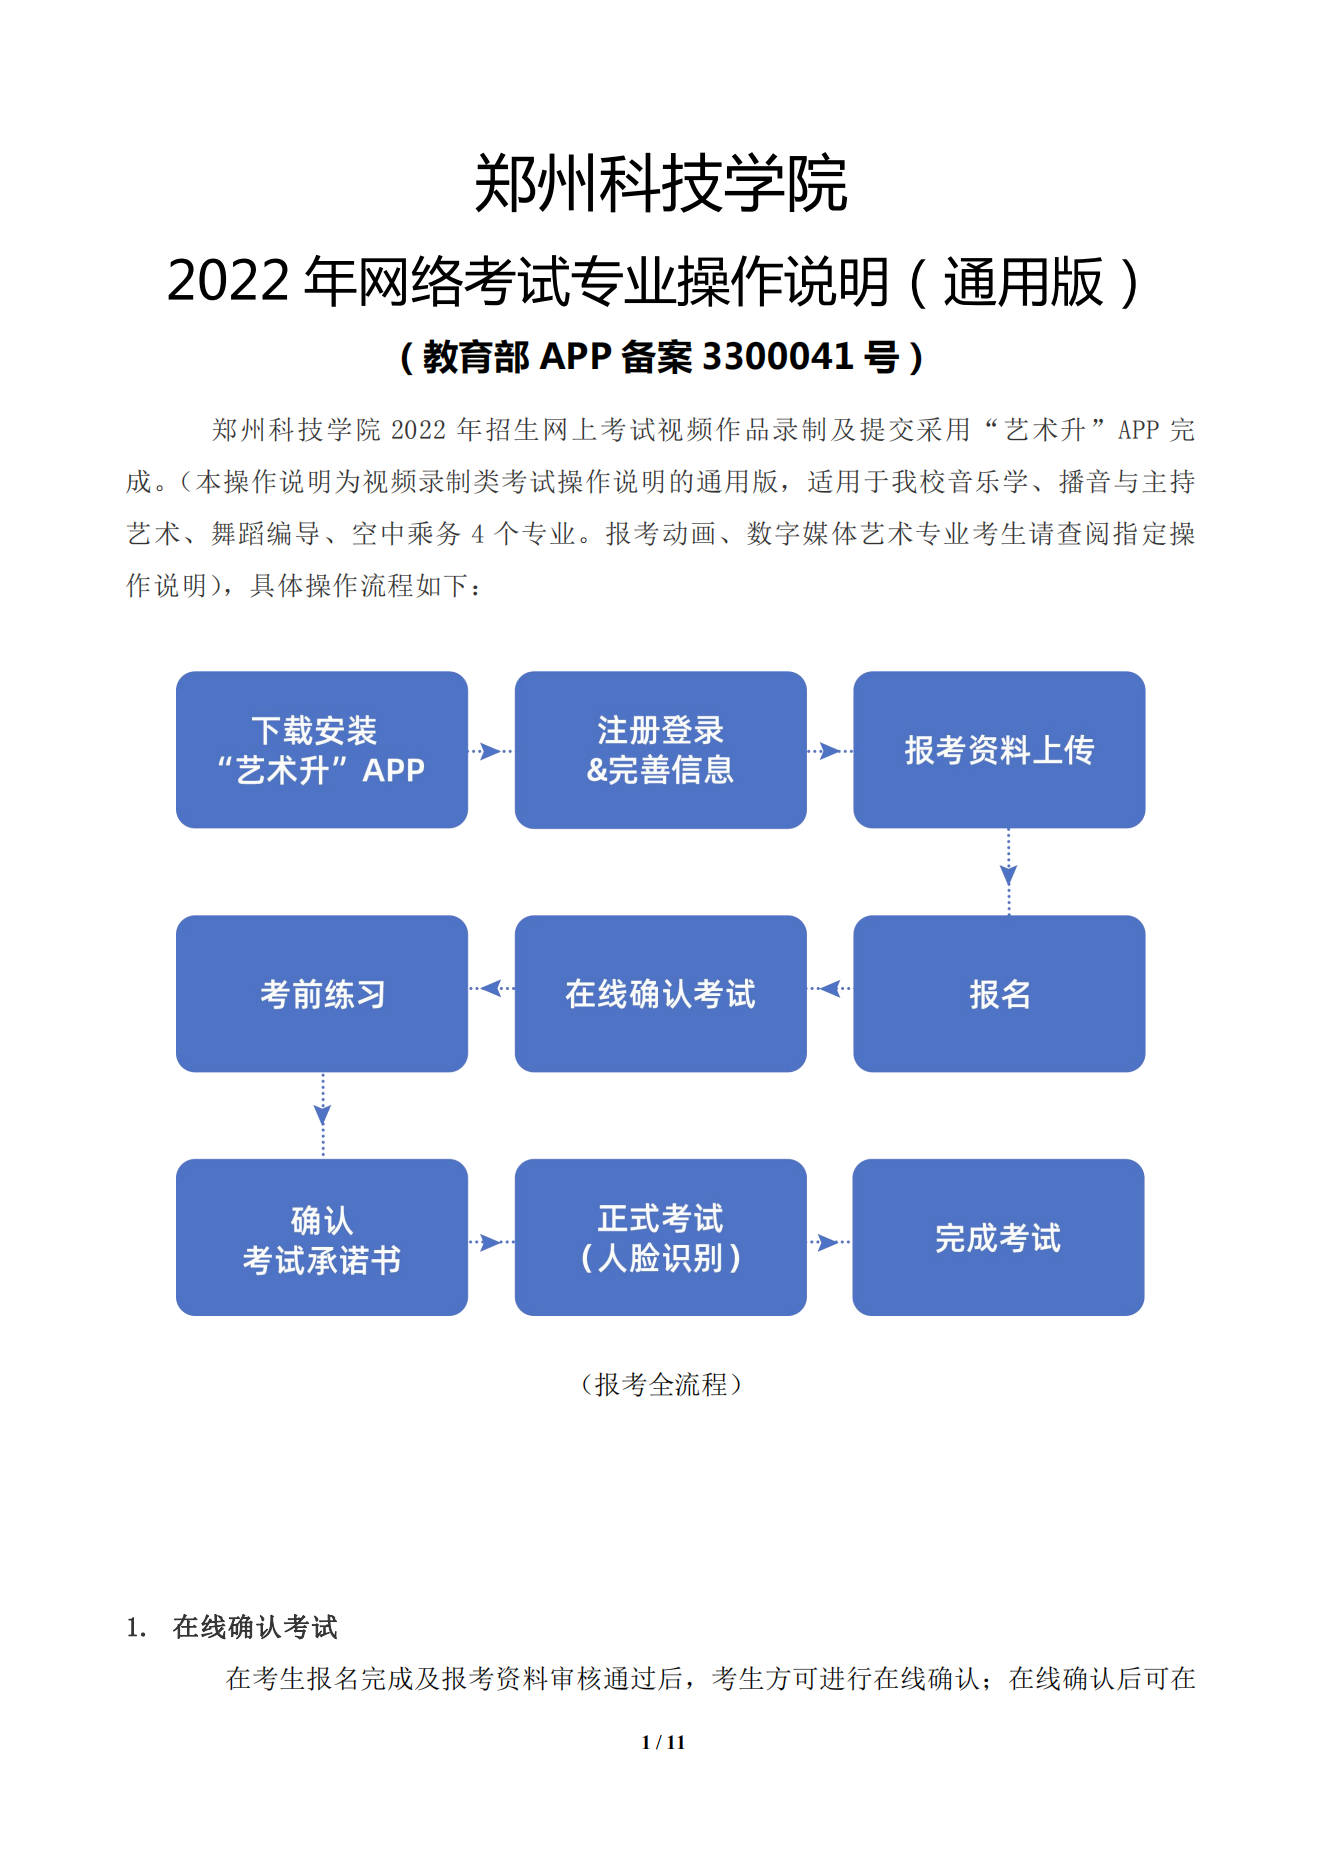 郑州科技学院2022年网络考试专业操作说明（通用版）_00.png